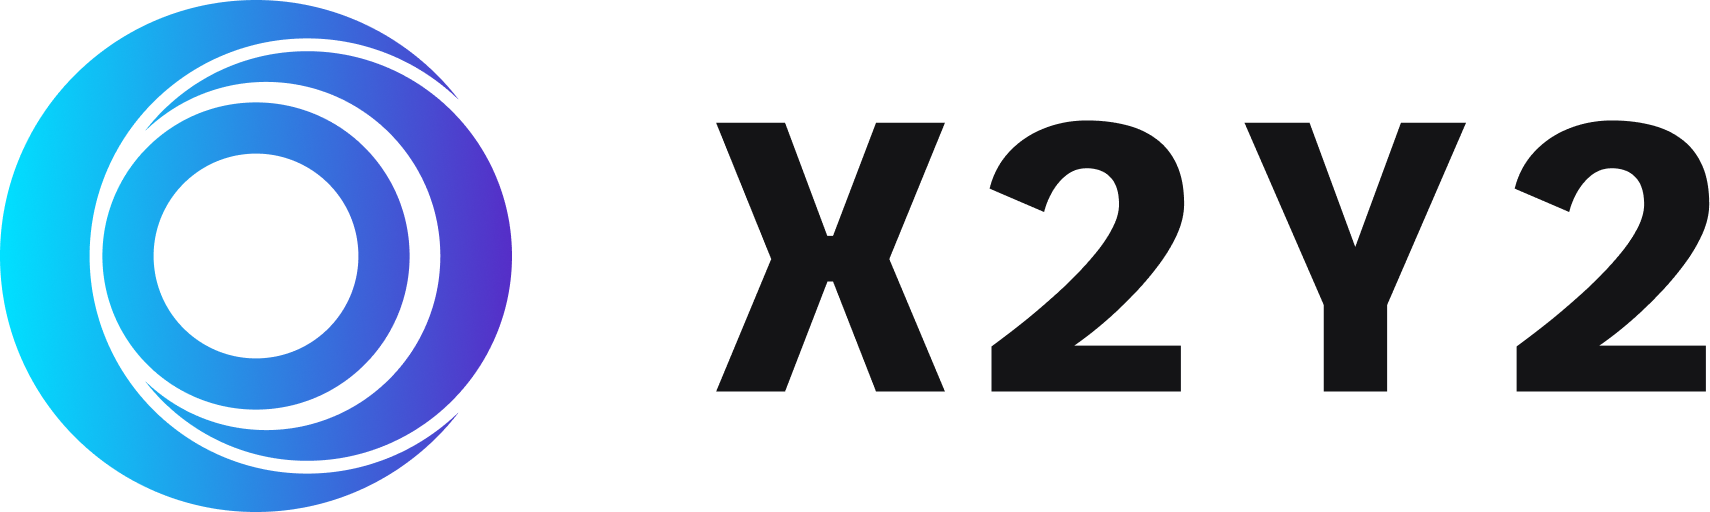 Marketplace icon x2y2.io